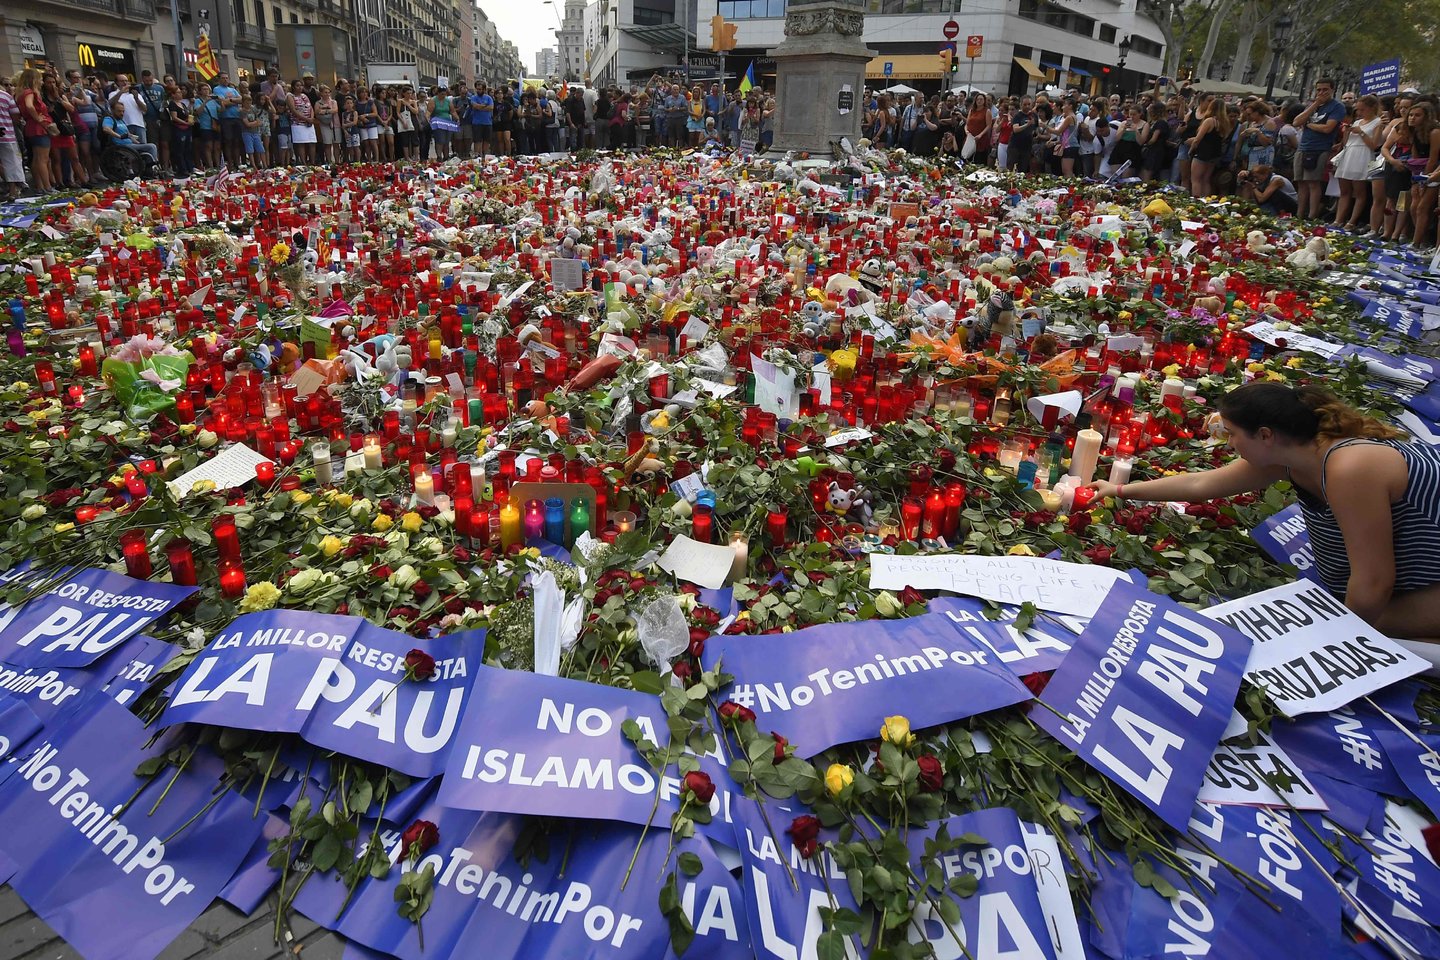 Įtariamas praėjusių metų džihadistų išpuolių Barselonoje sumanytojas vis dar laisvėje, ketvirtadienį pranešė vienas Ispanijos dienraštis. <br>AFP/